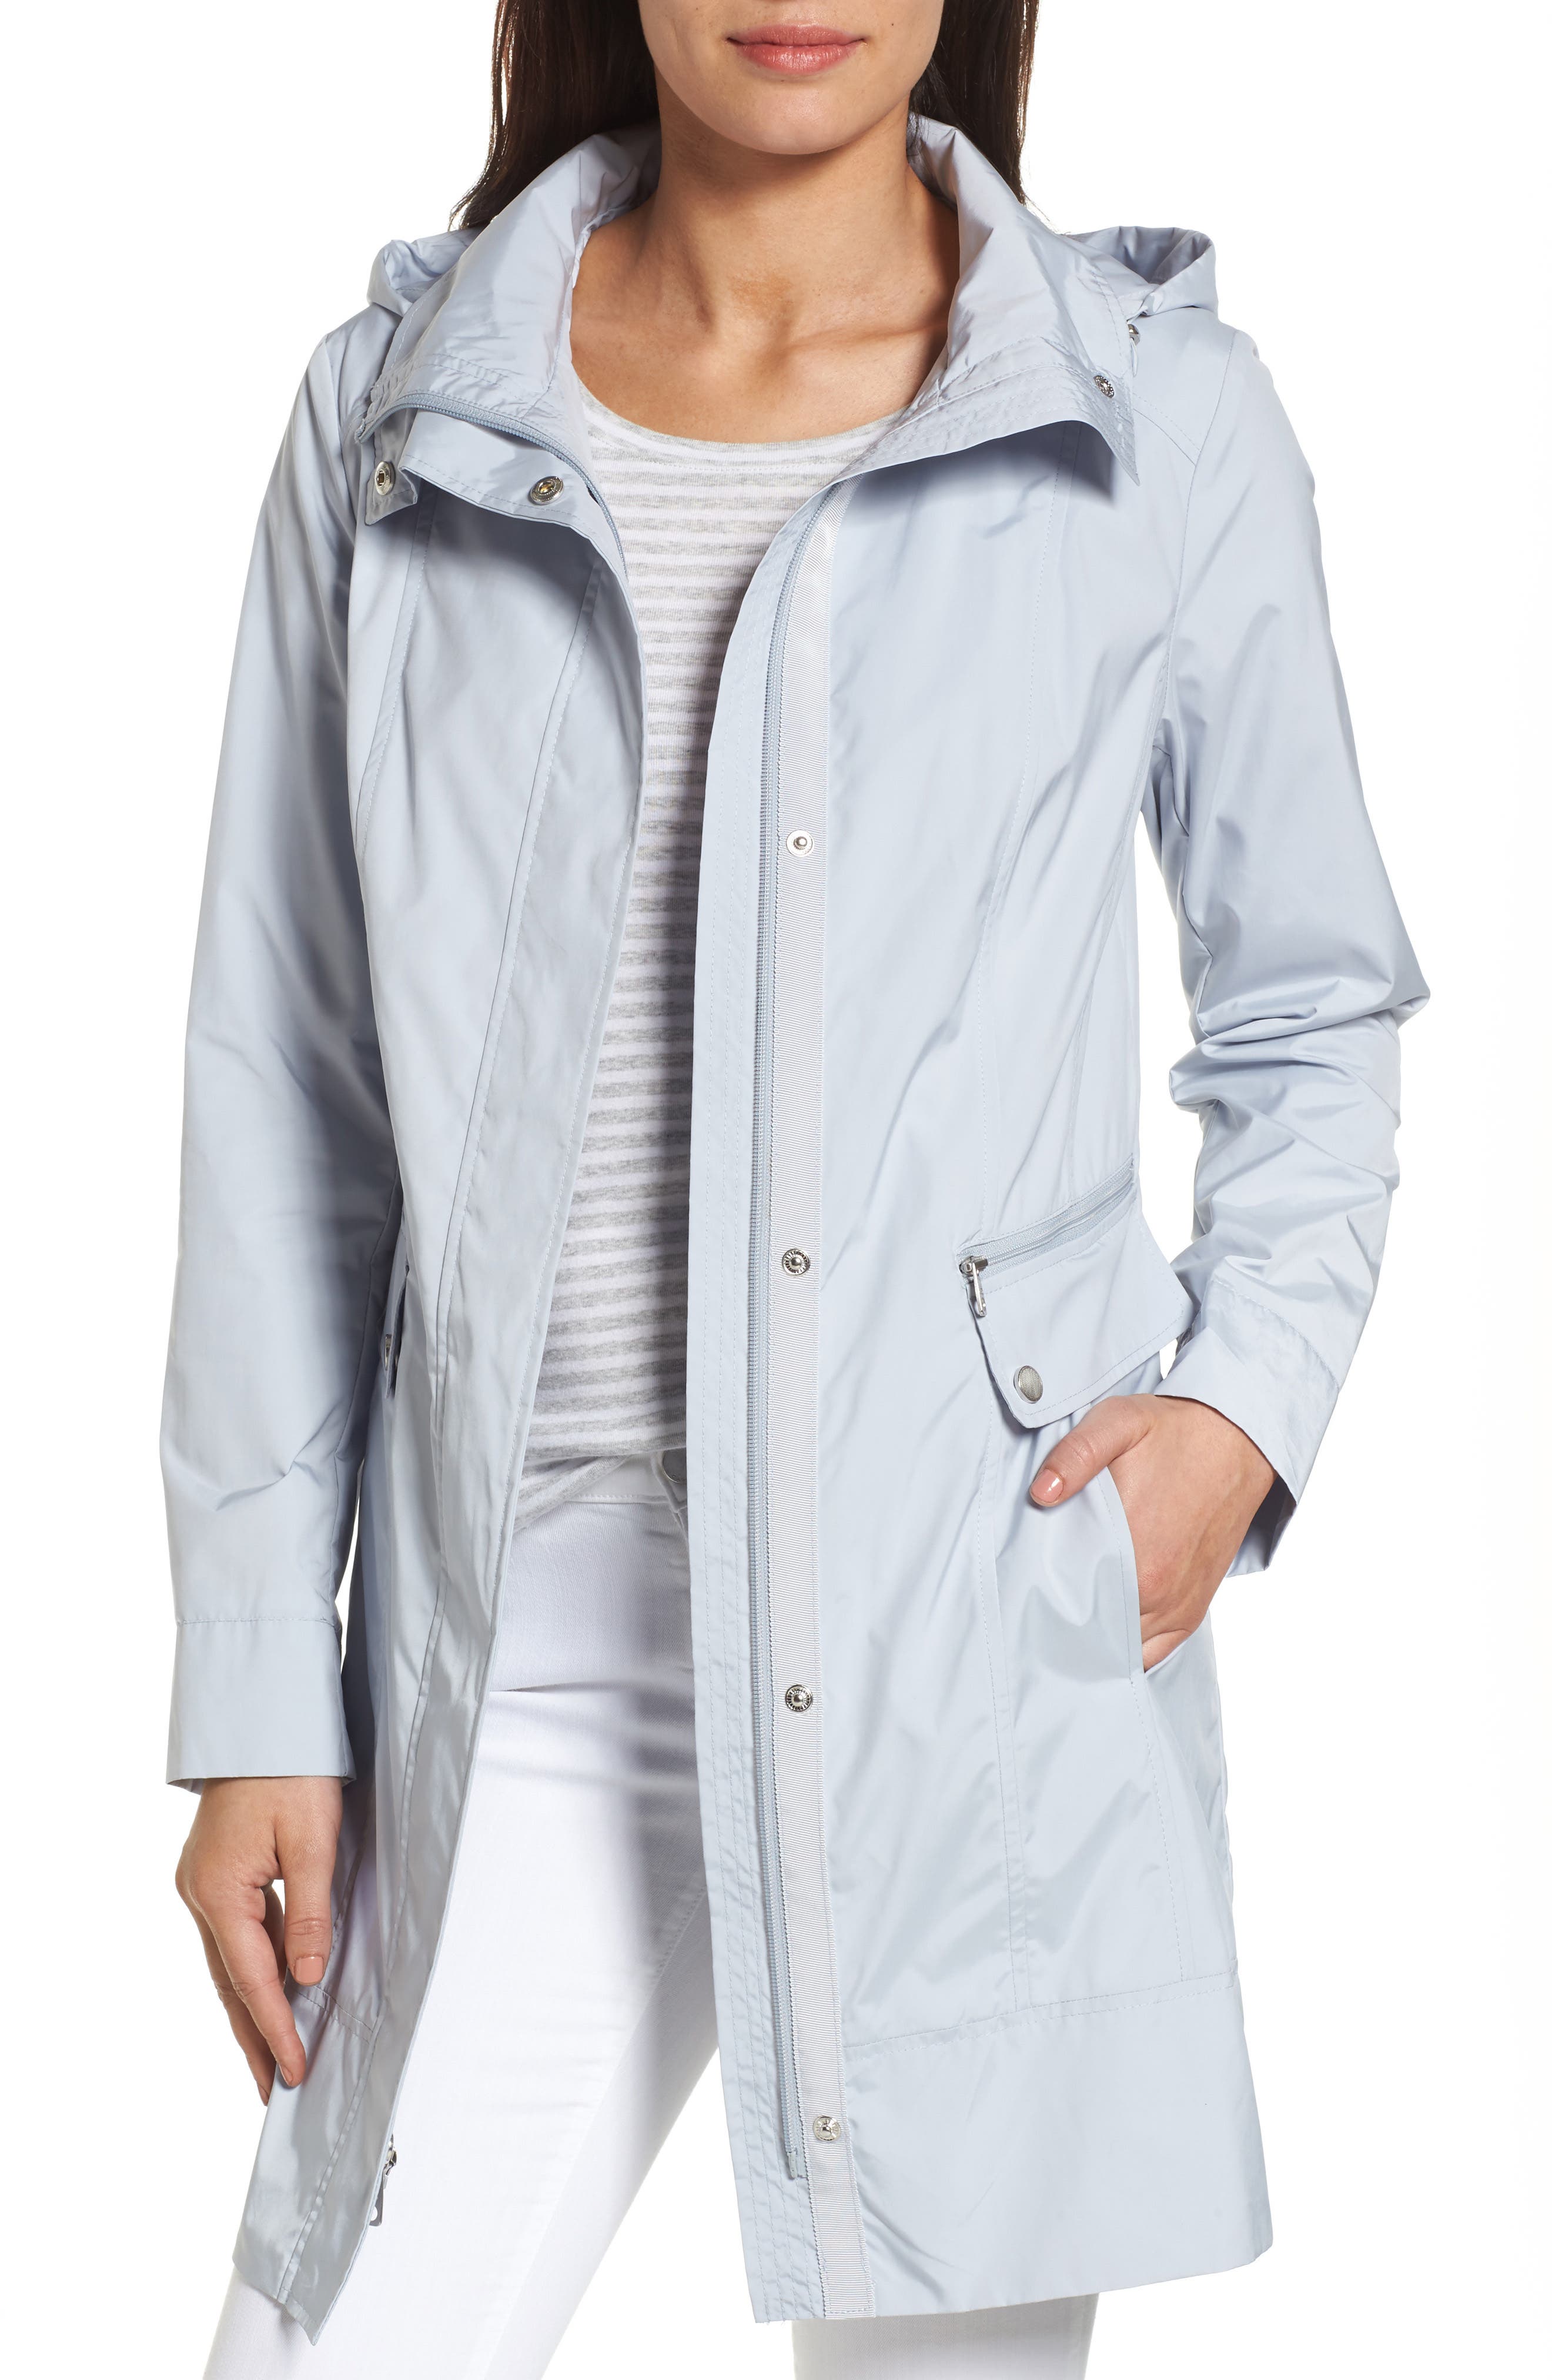 Cole Haan Women's City Packable Rain Jacket 